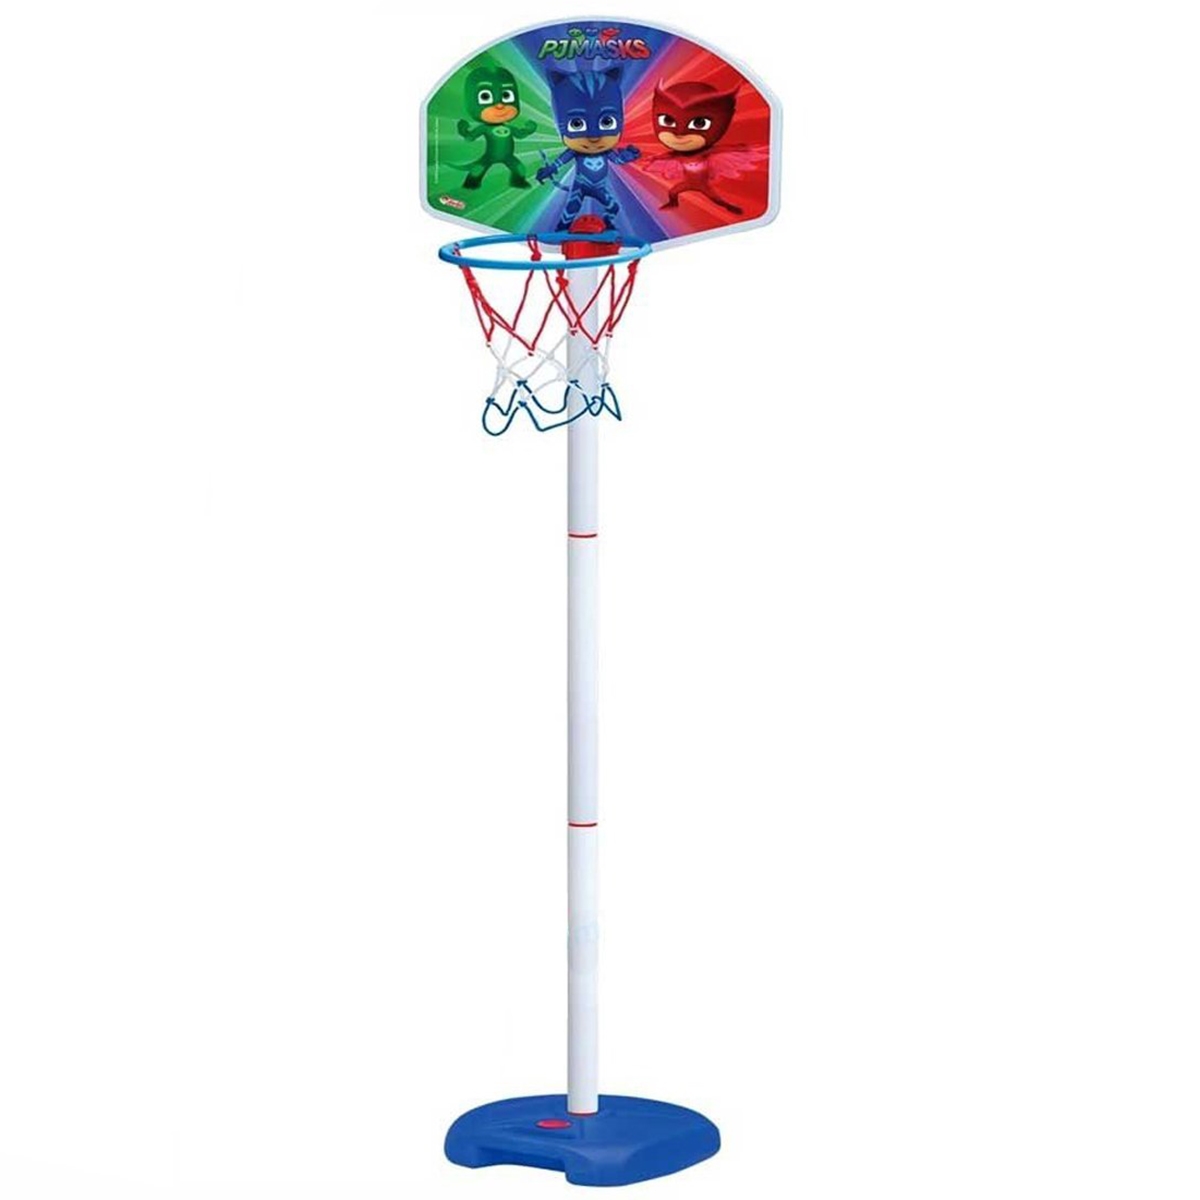 Pjmasks Oyuncak Ayaklı Basketbol seti 3+ Yaş Kırmızı